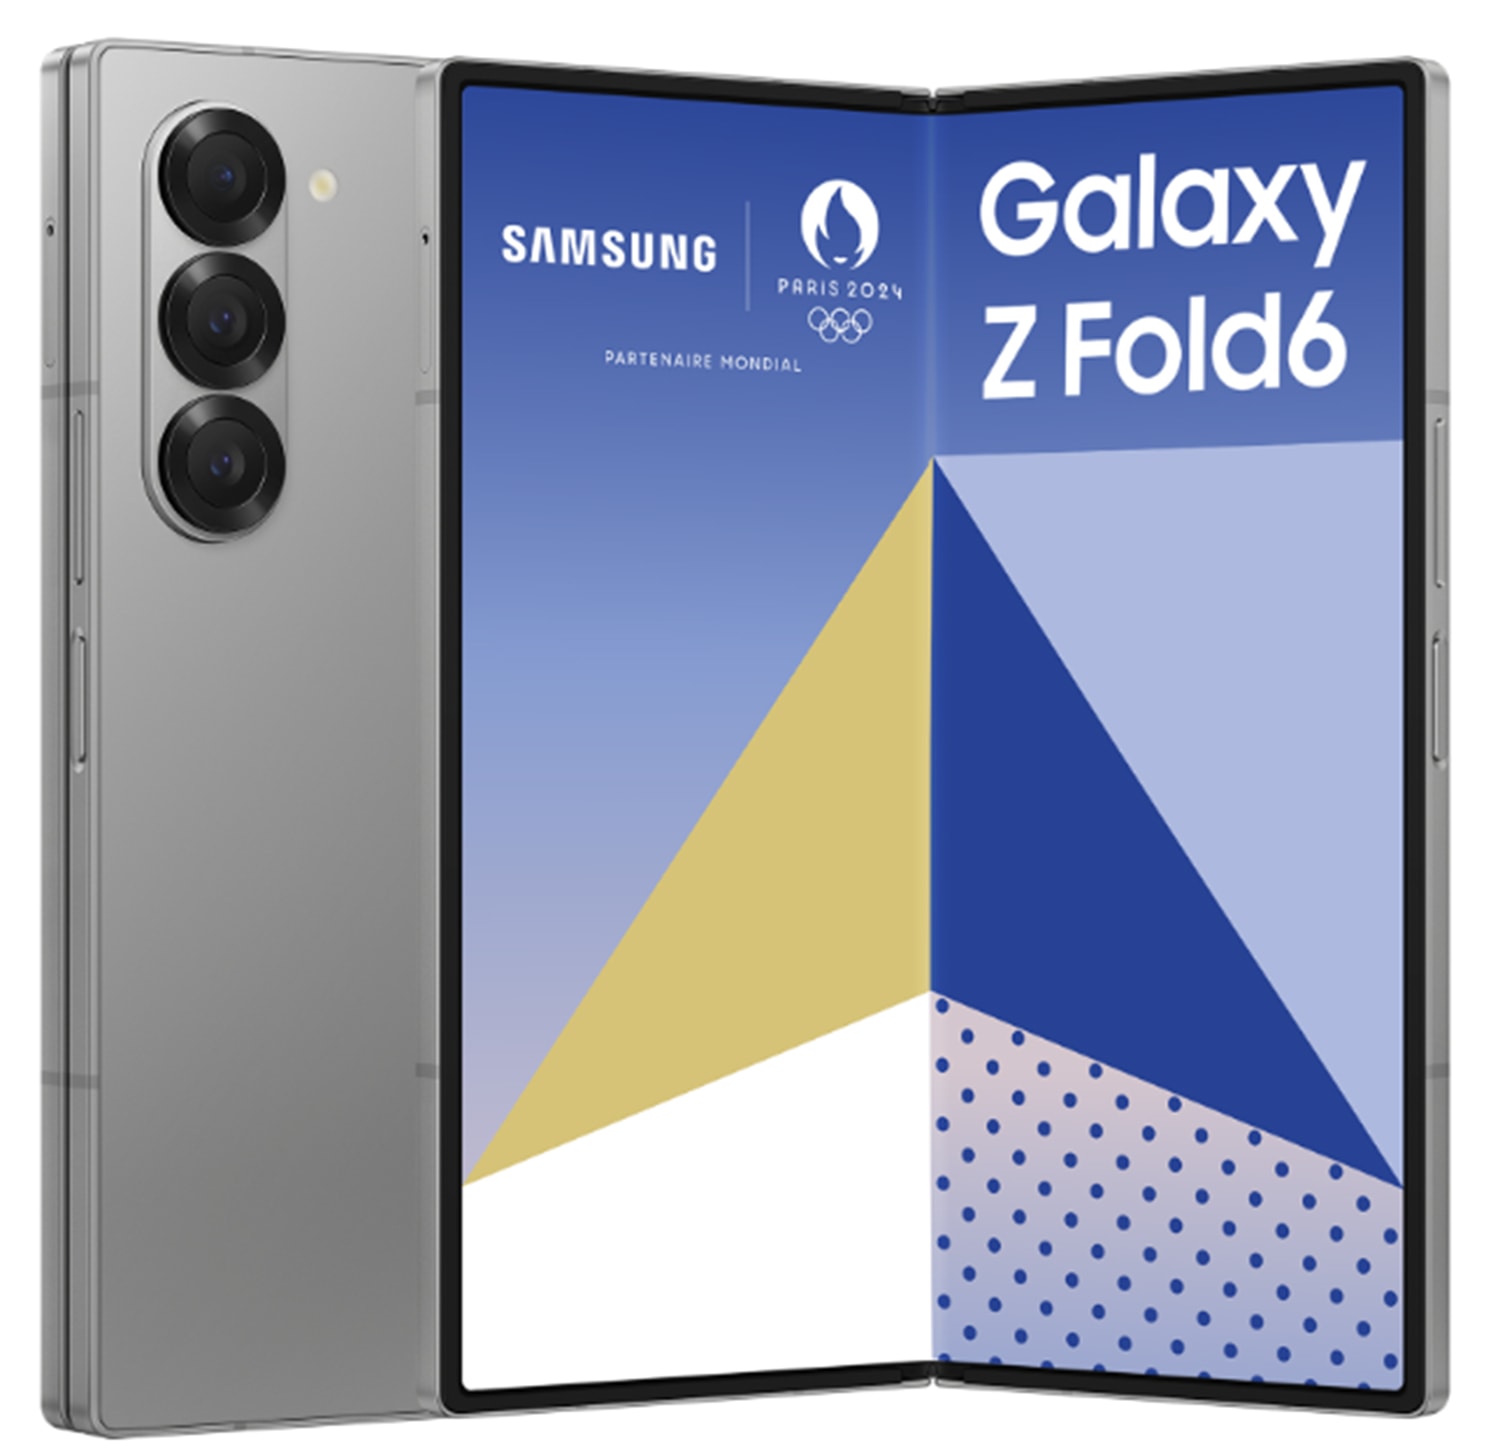 SAMSUNG Smartphone Galaxy ZFold 6 256go Gris  GALAXY-ZFOLD6-256-GR